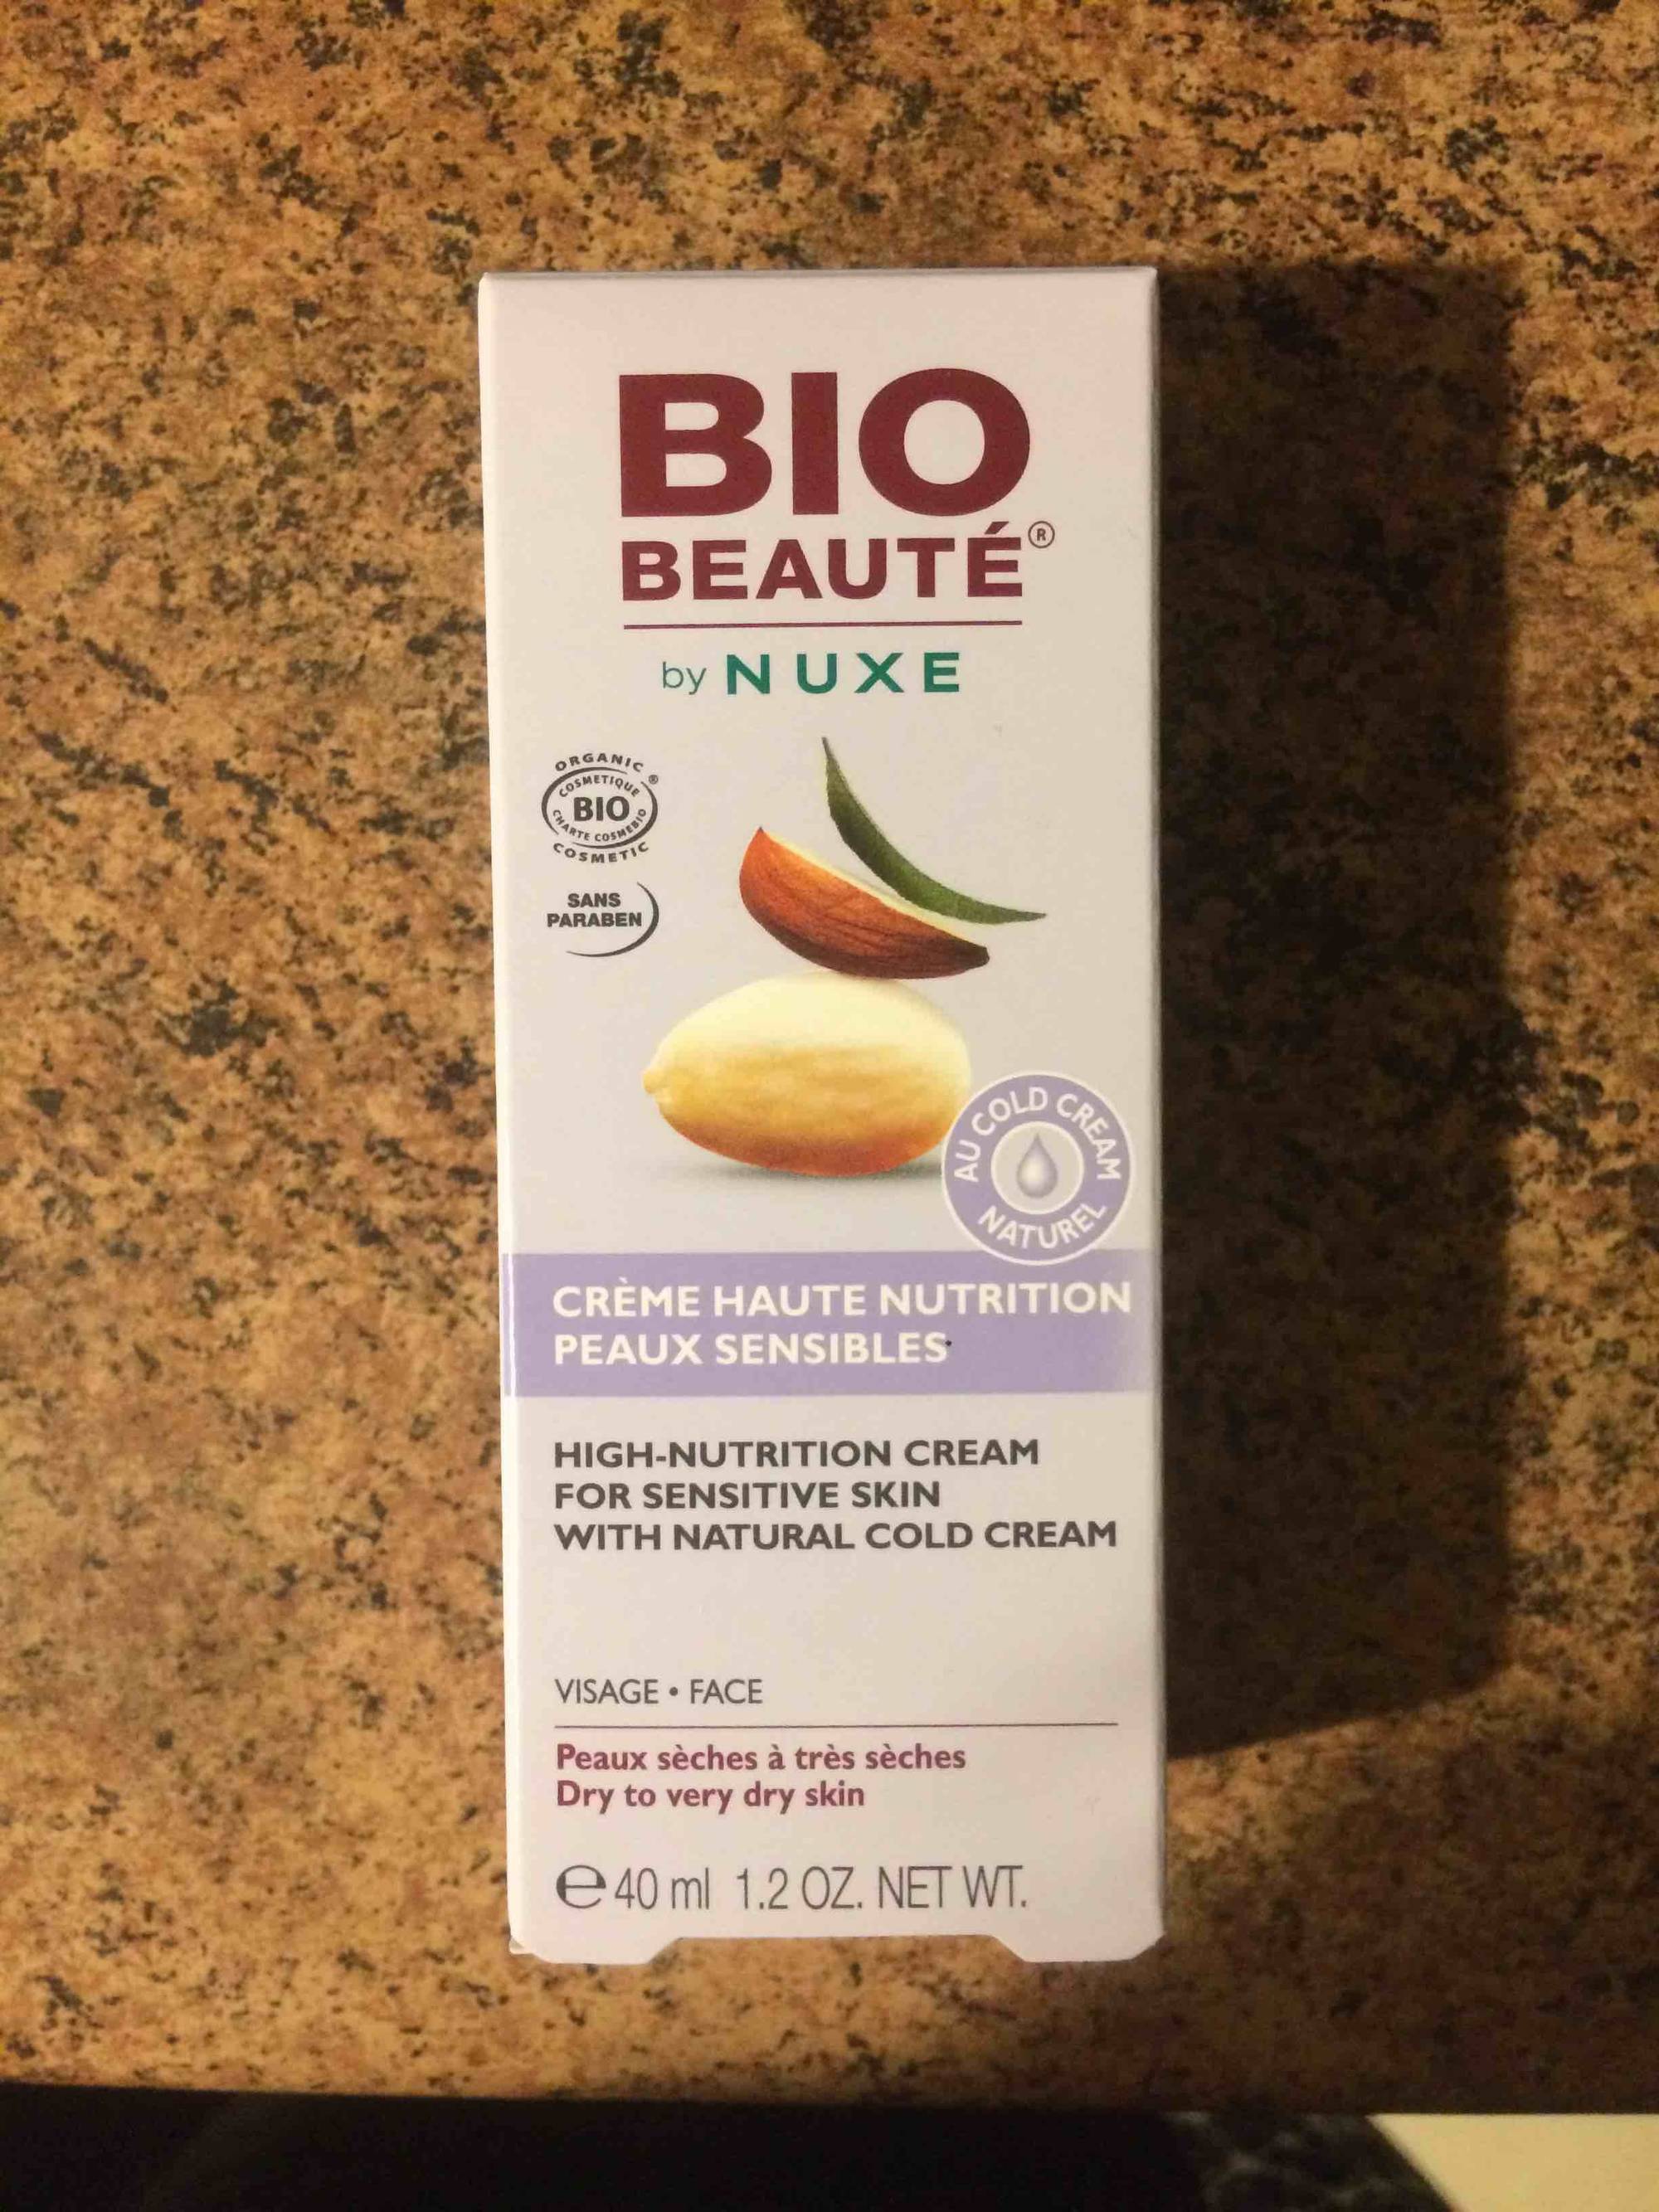 NUXE - Bio Beauté - Crème hautre nutrition au cold cream